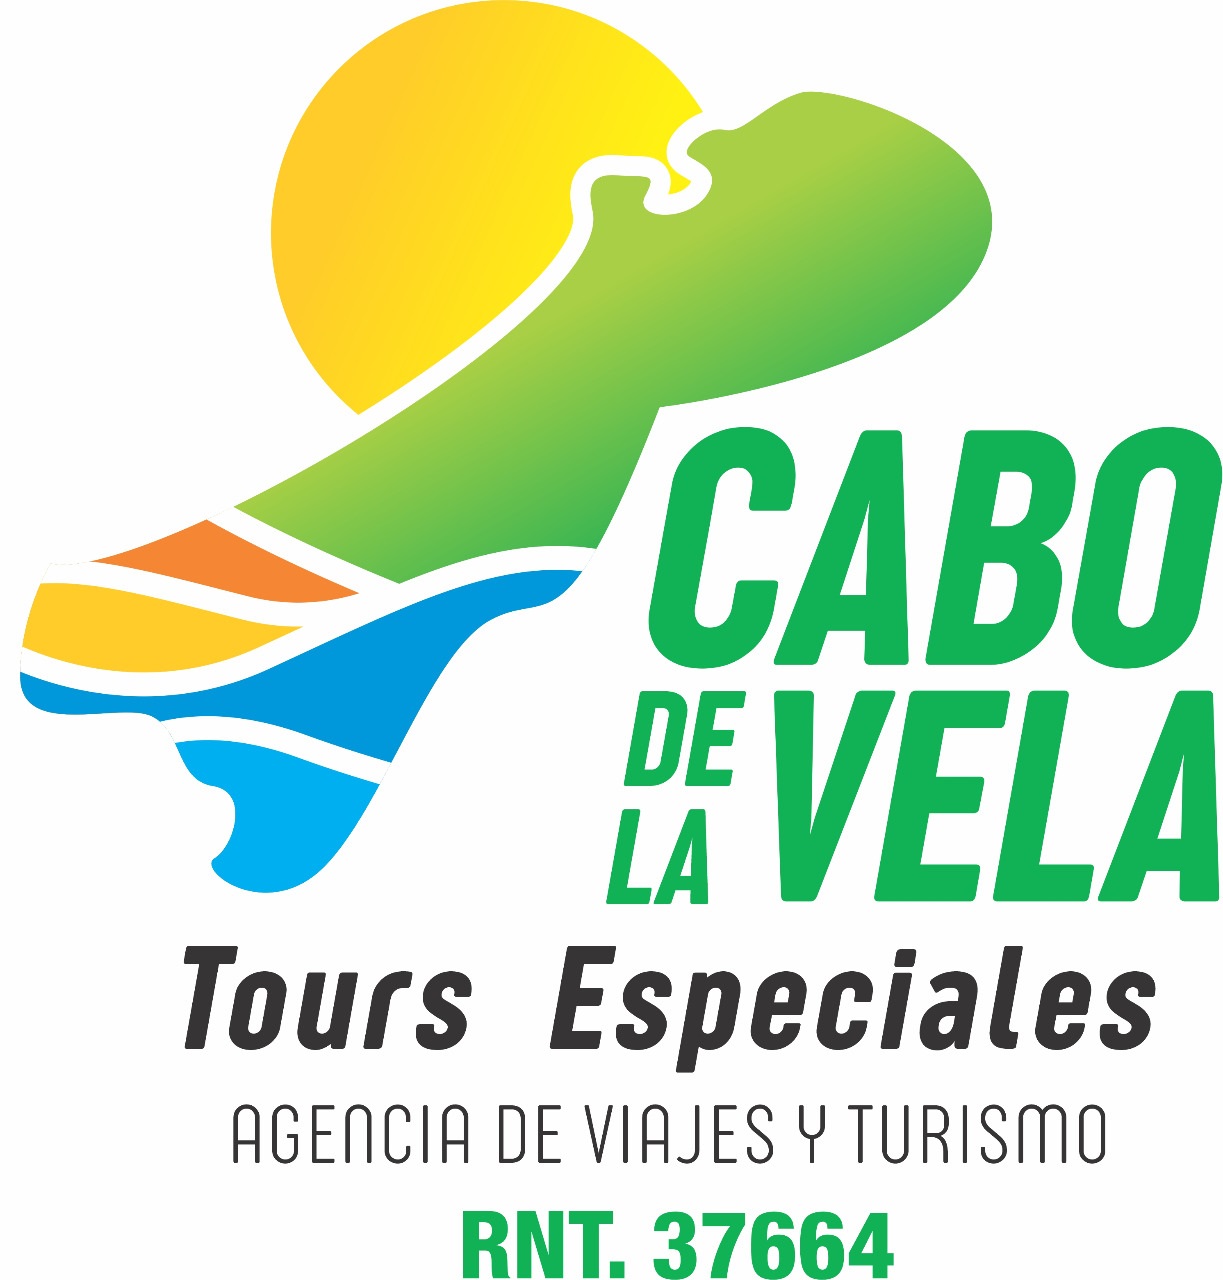 TOUR DE 3 DÍAS Y 2 NOCHE EN EL CABO DE LA VELA.